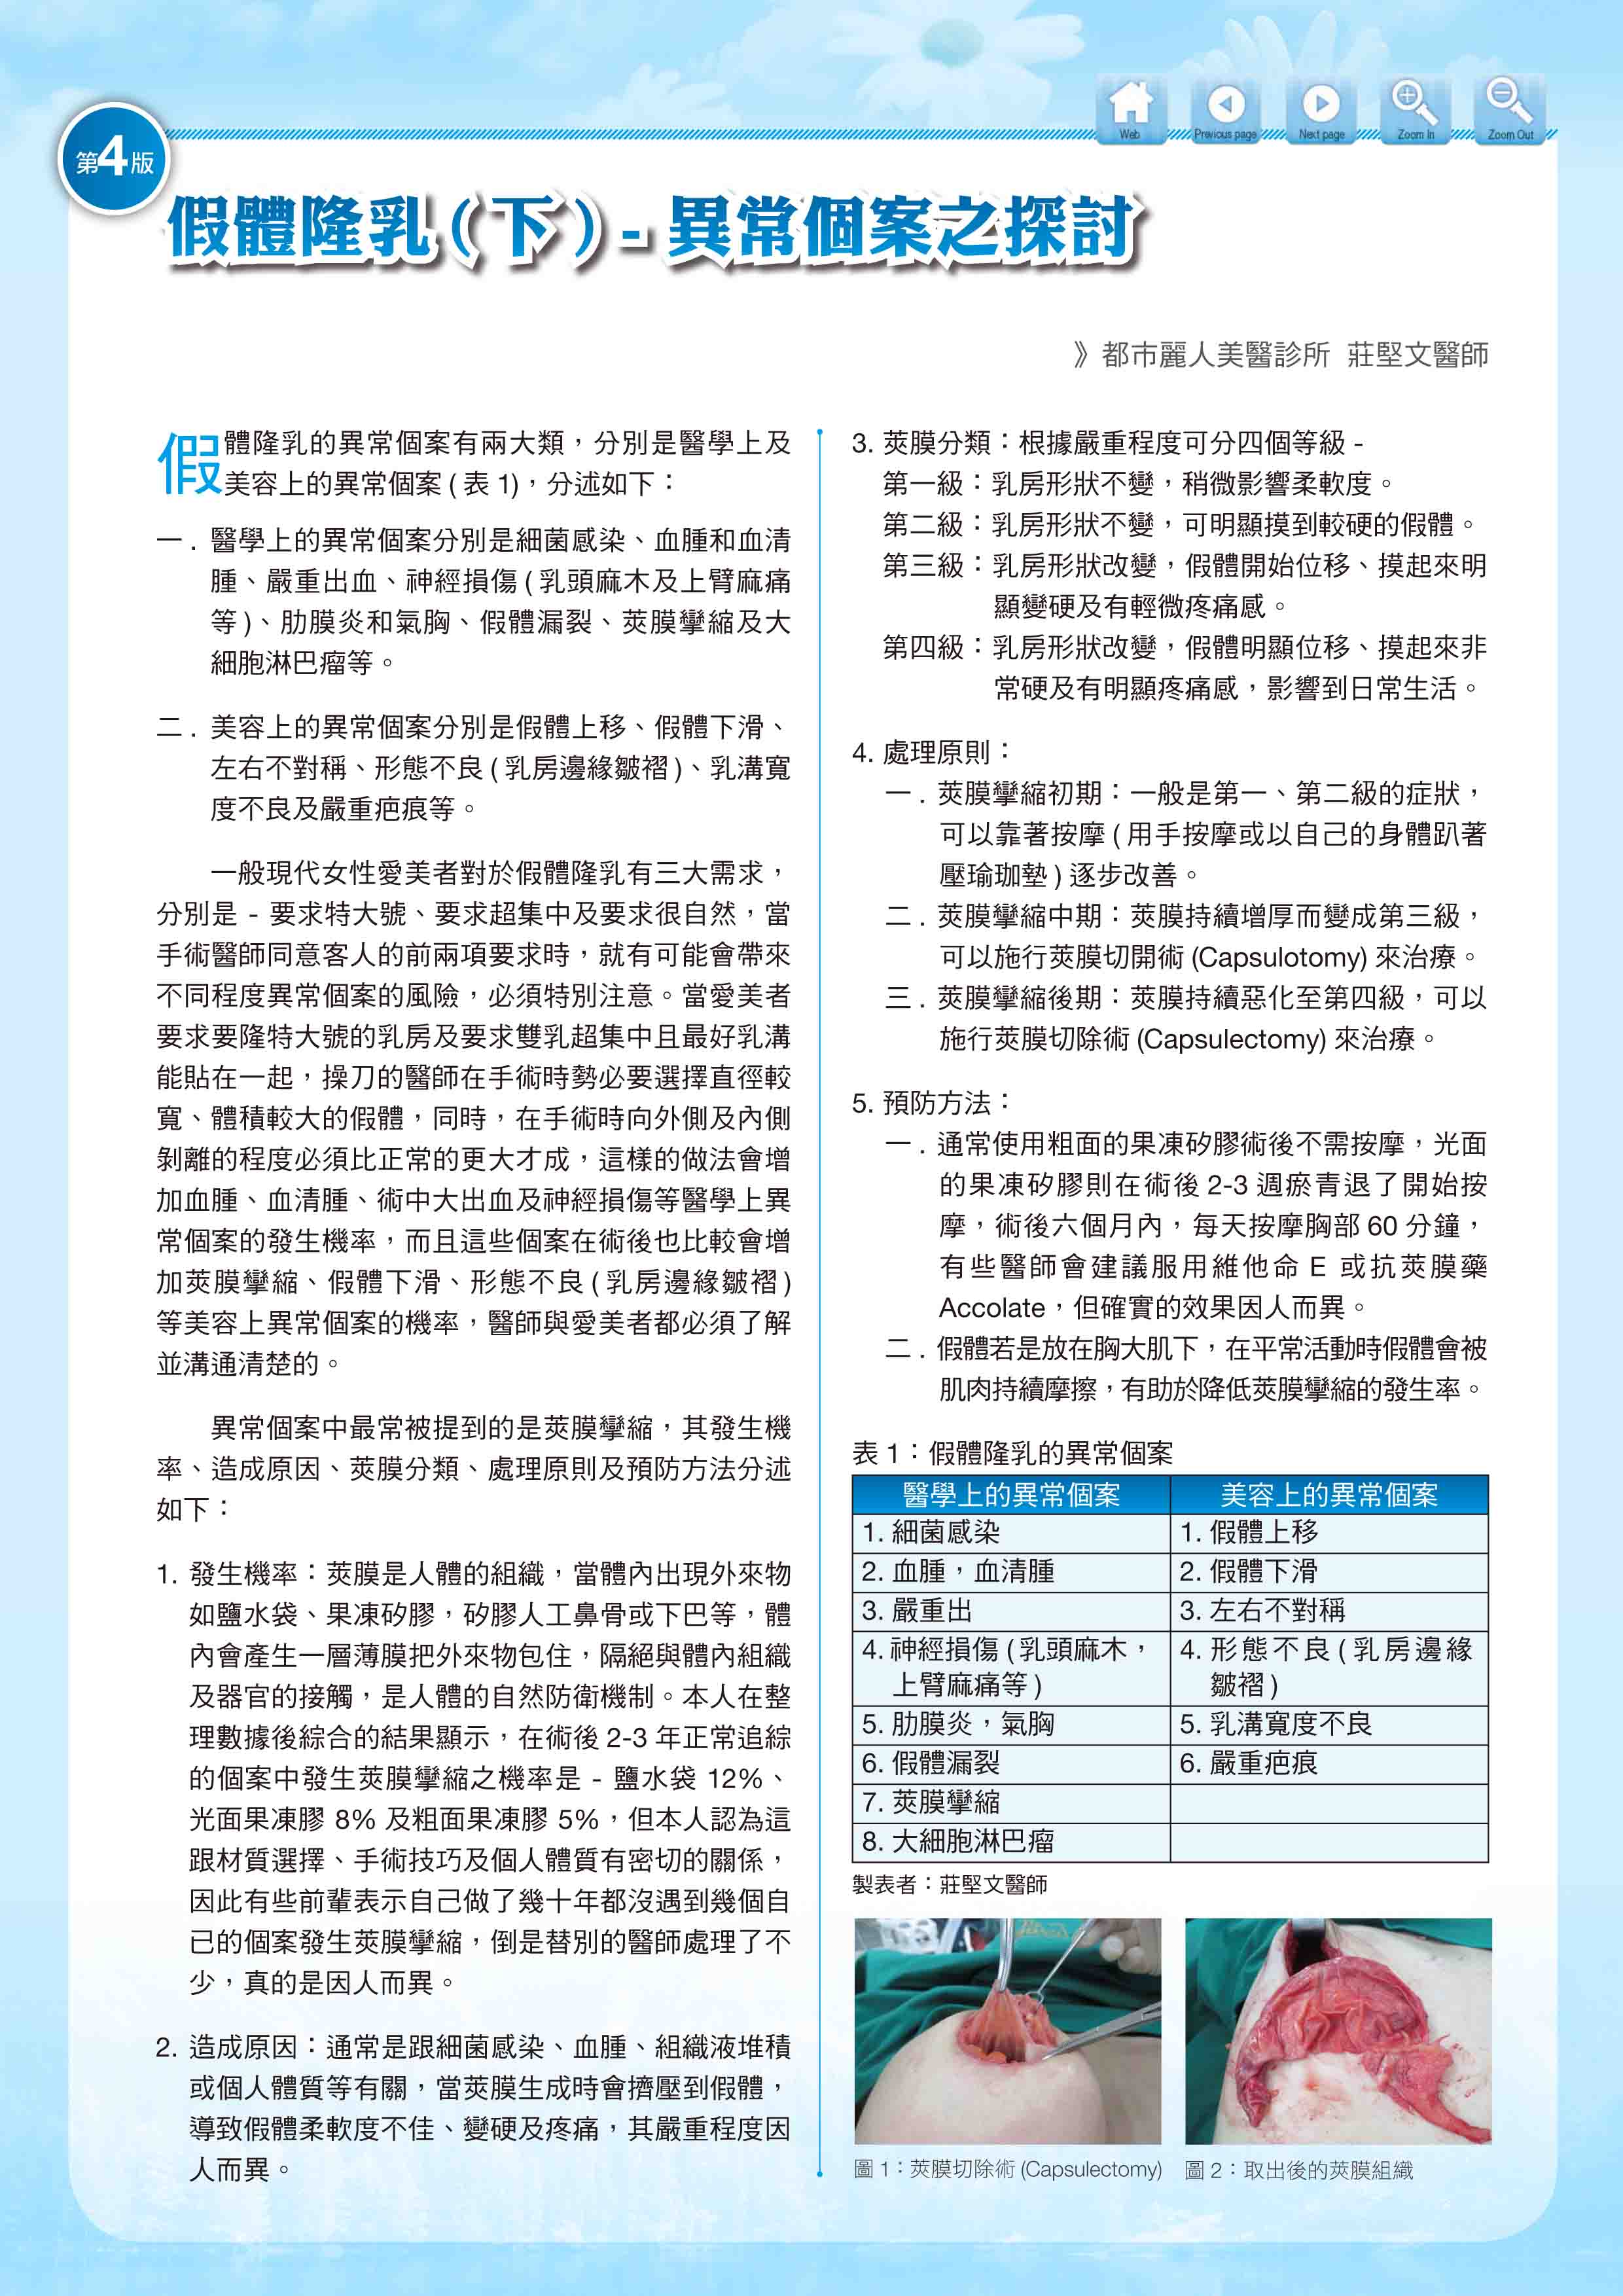 2020 年 6 月 份 月 刊 ( 中 華 台 灣 美 容 醫 學 會 )